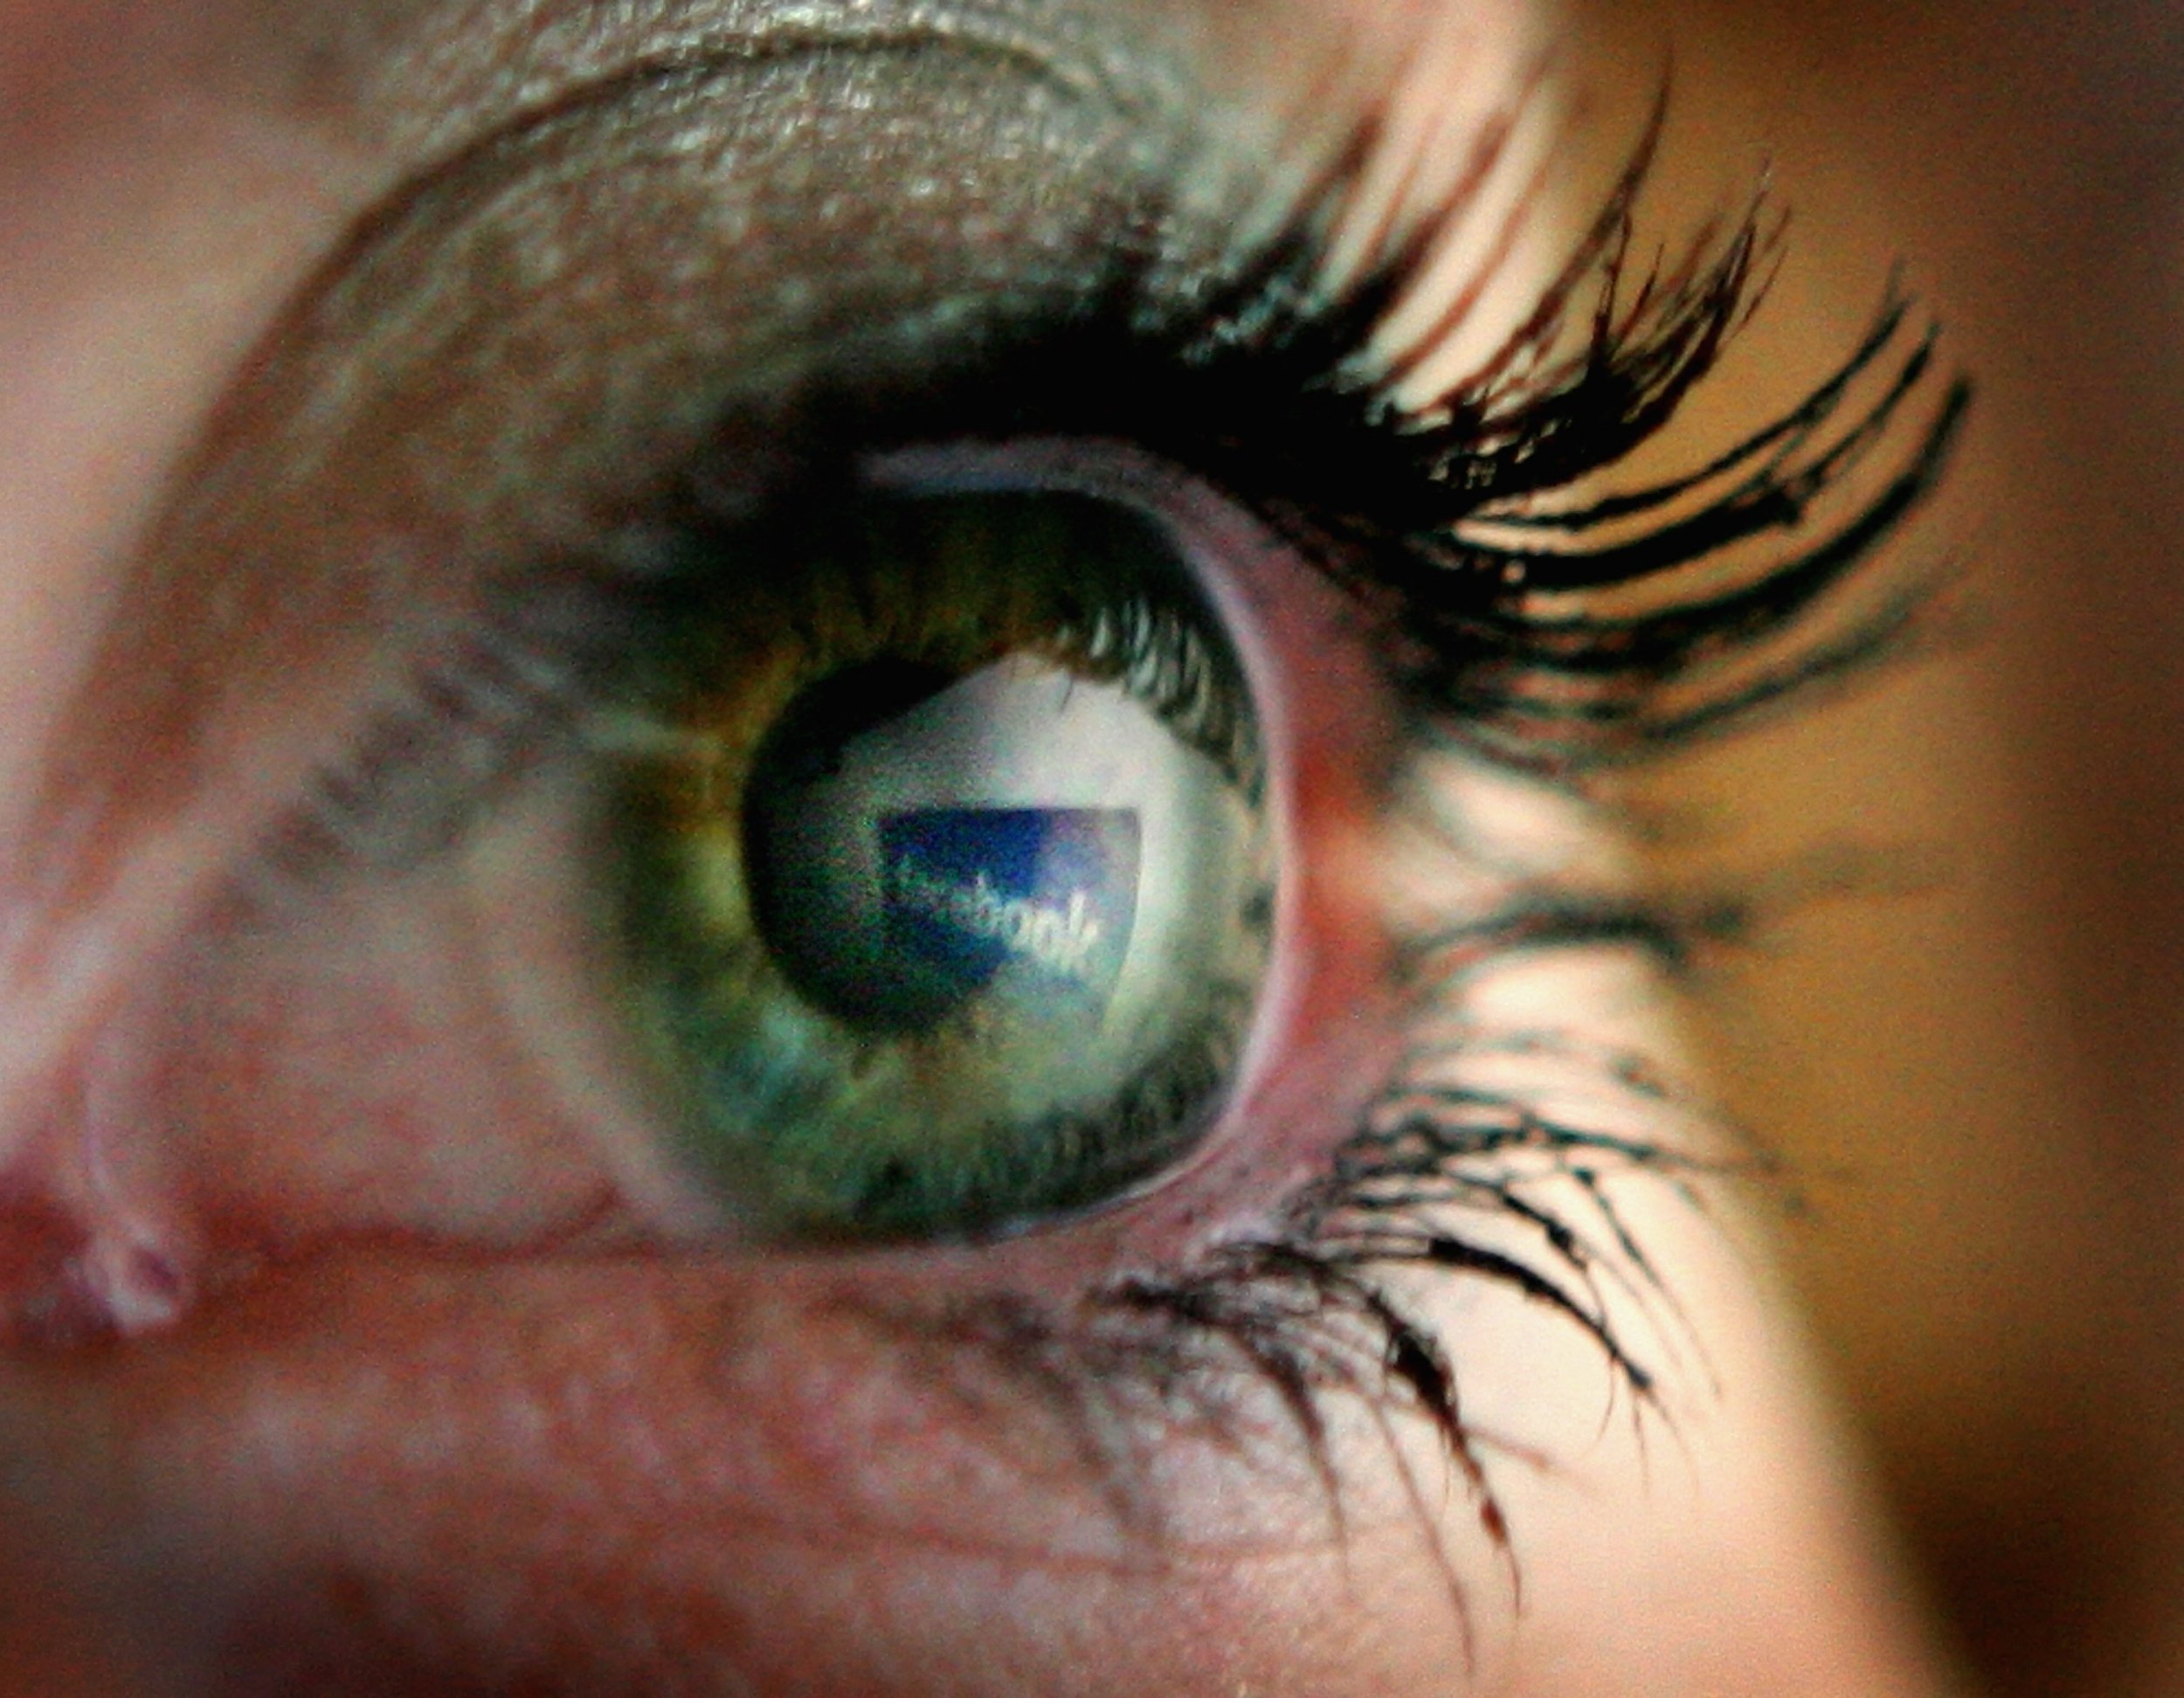 facebook reflected in eye